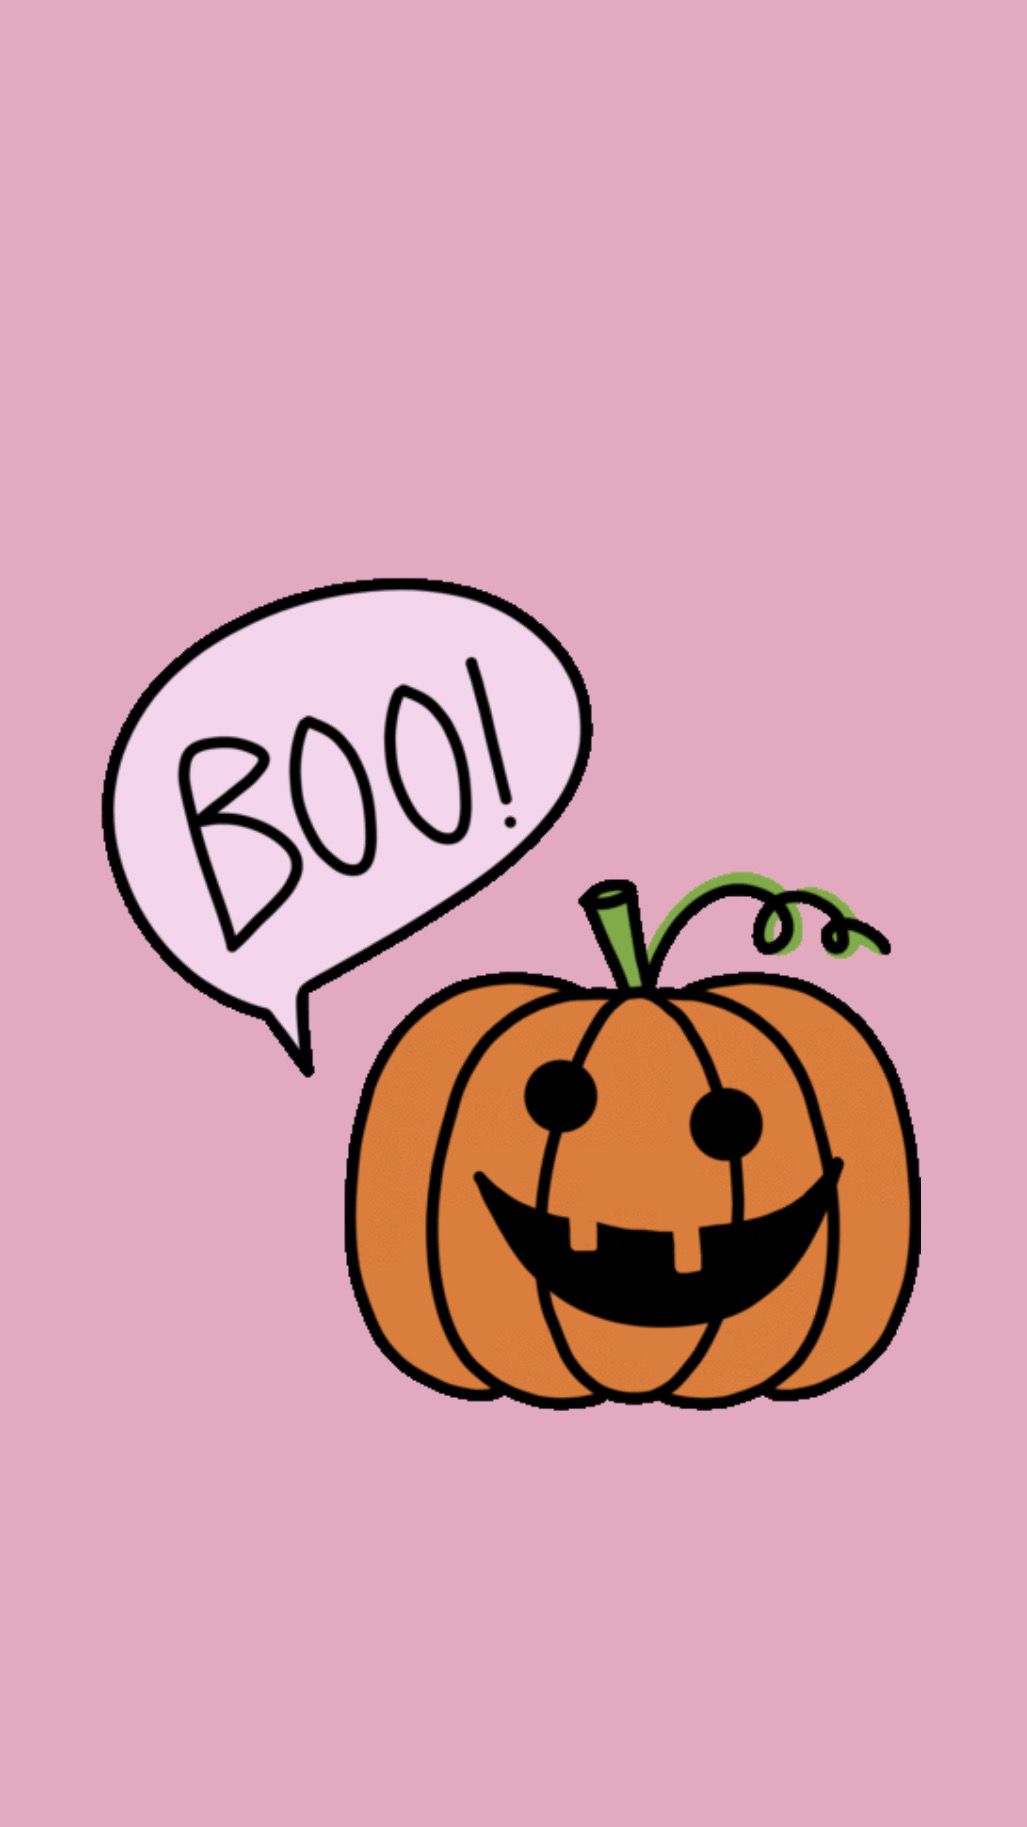 Magical Cute Aesthetic Halloween Ideas